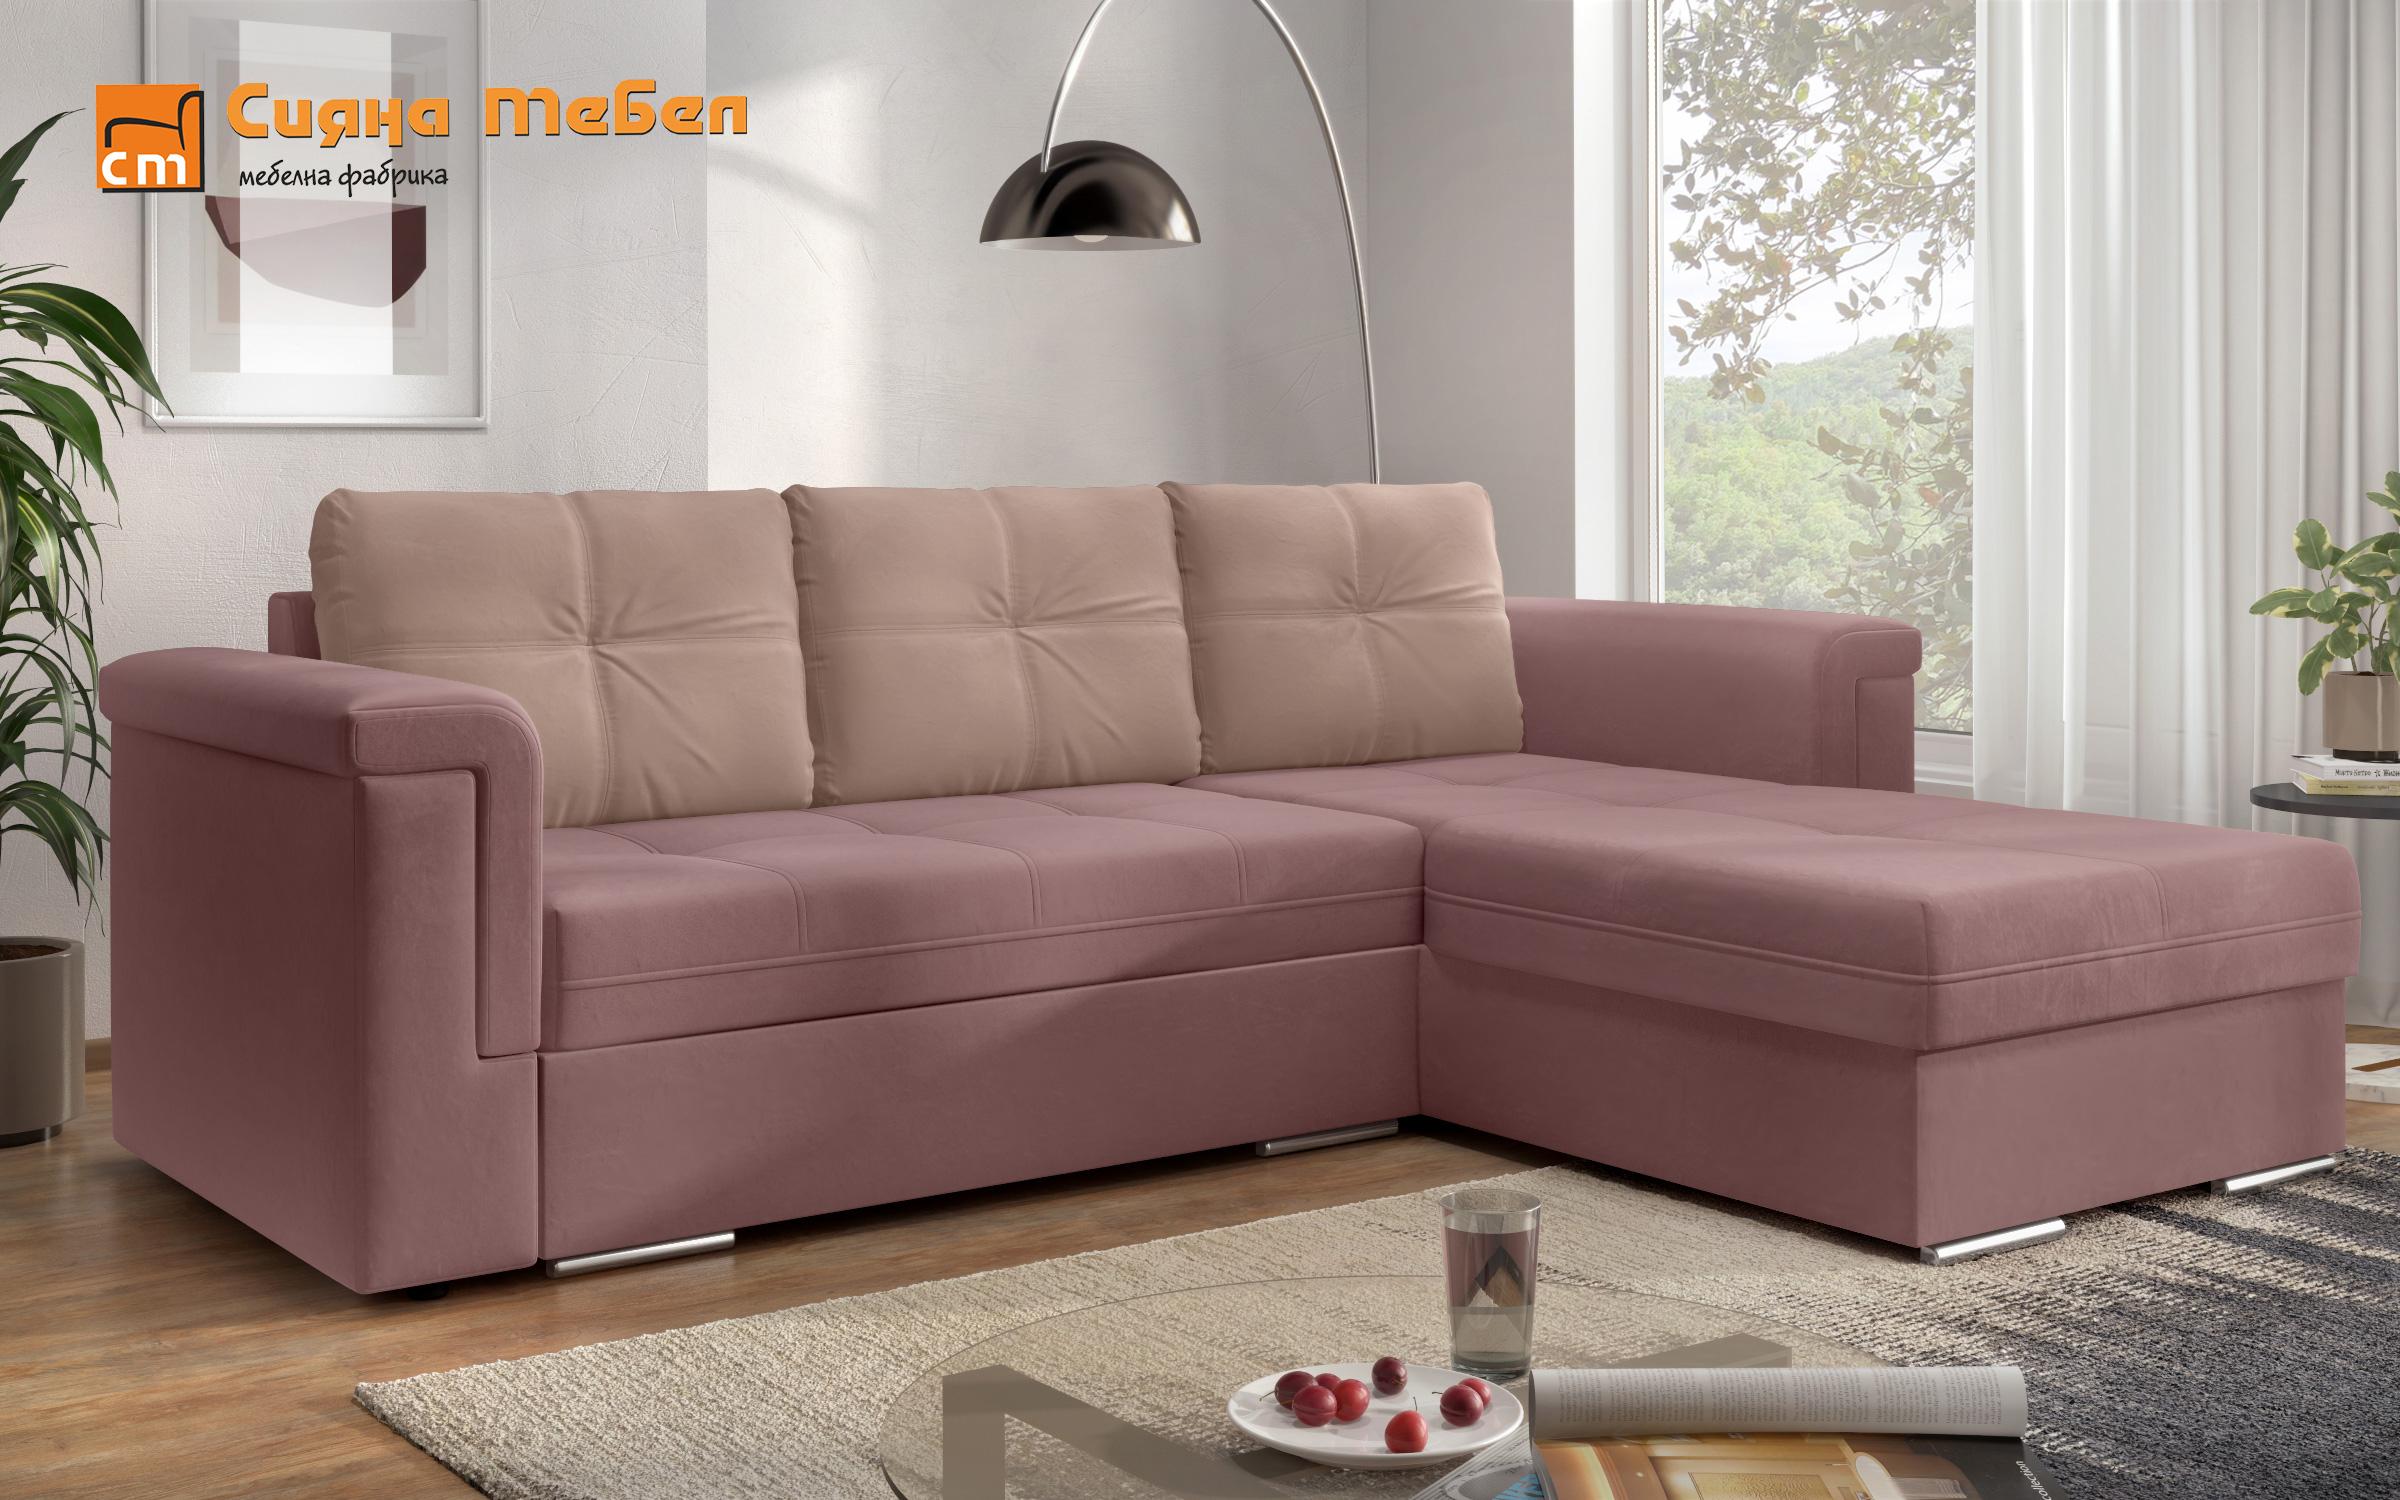 Γωνιακός καναπές Heaven, ροζ + ανοιχτό ροζ  3